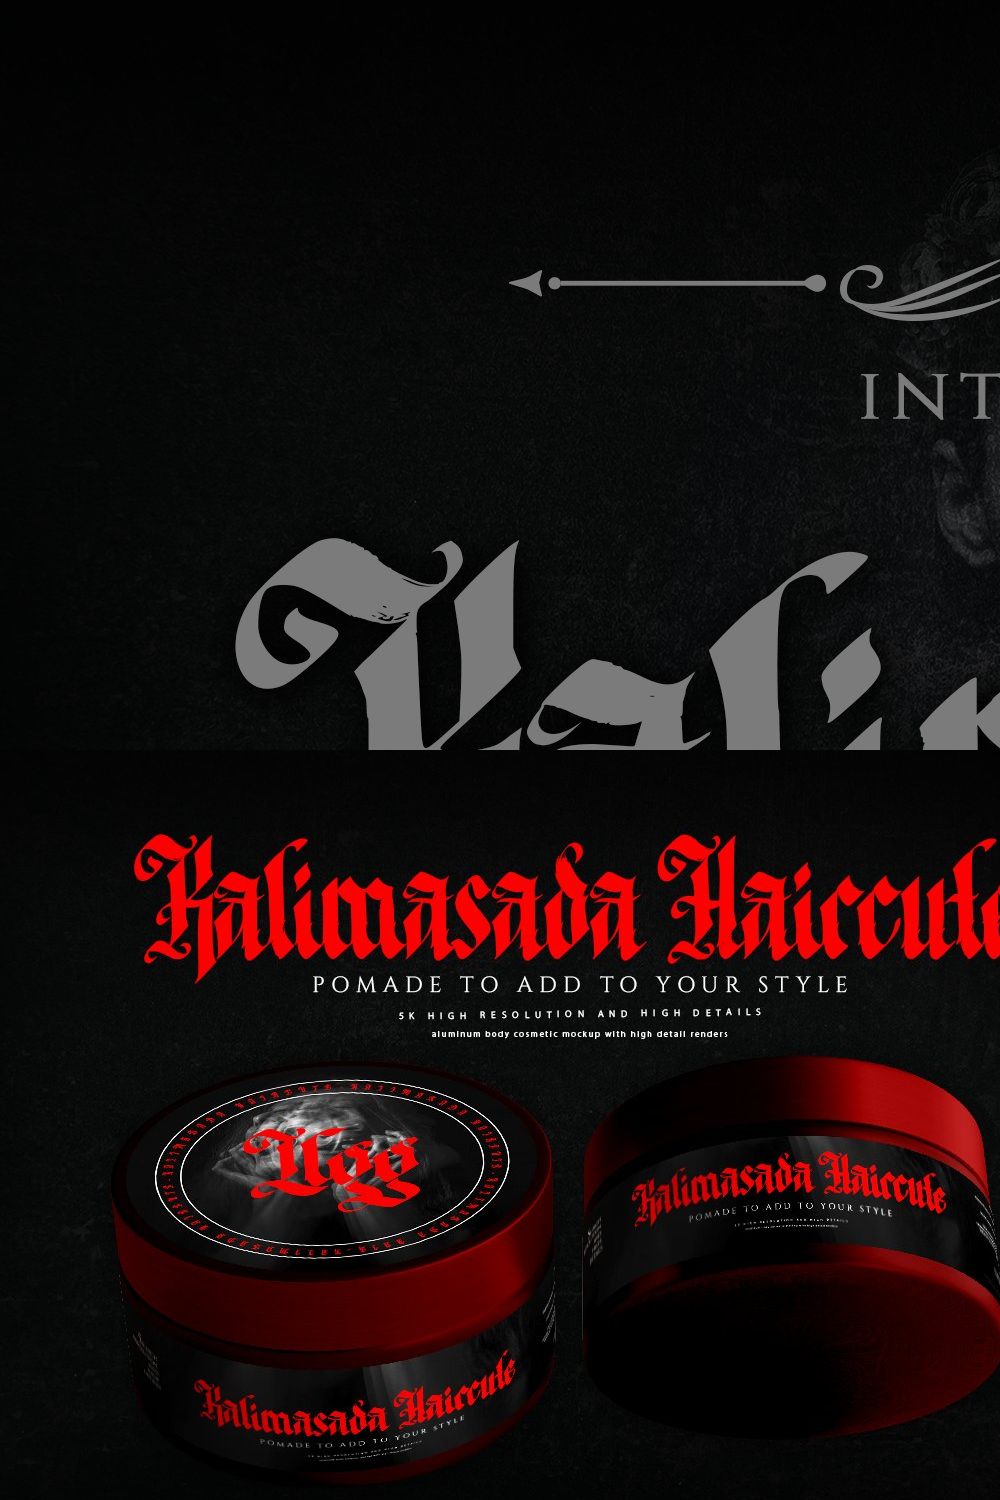 Kalimasada - Blackletter Type Font pinterest preview image.